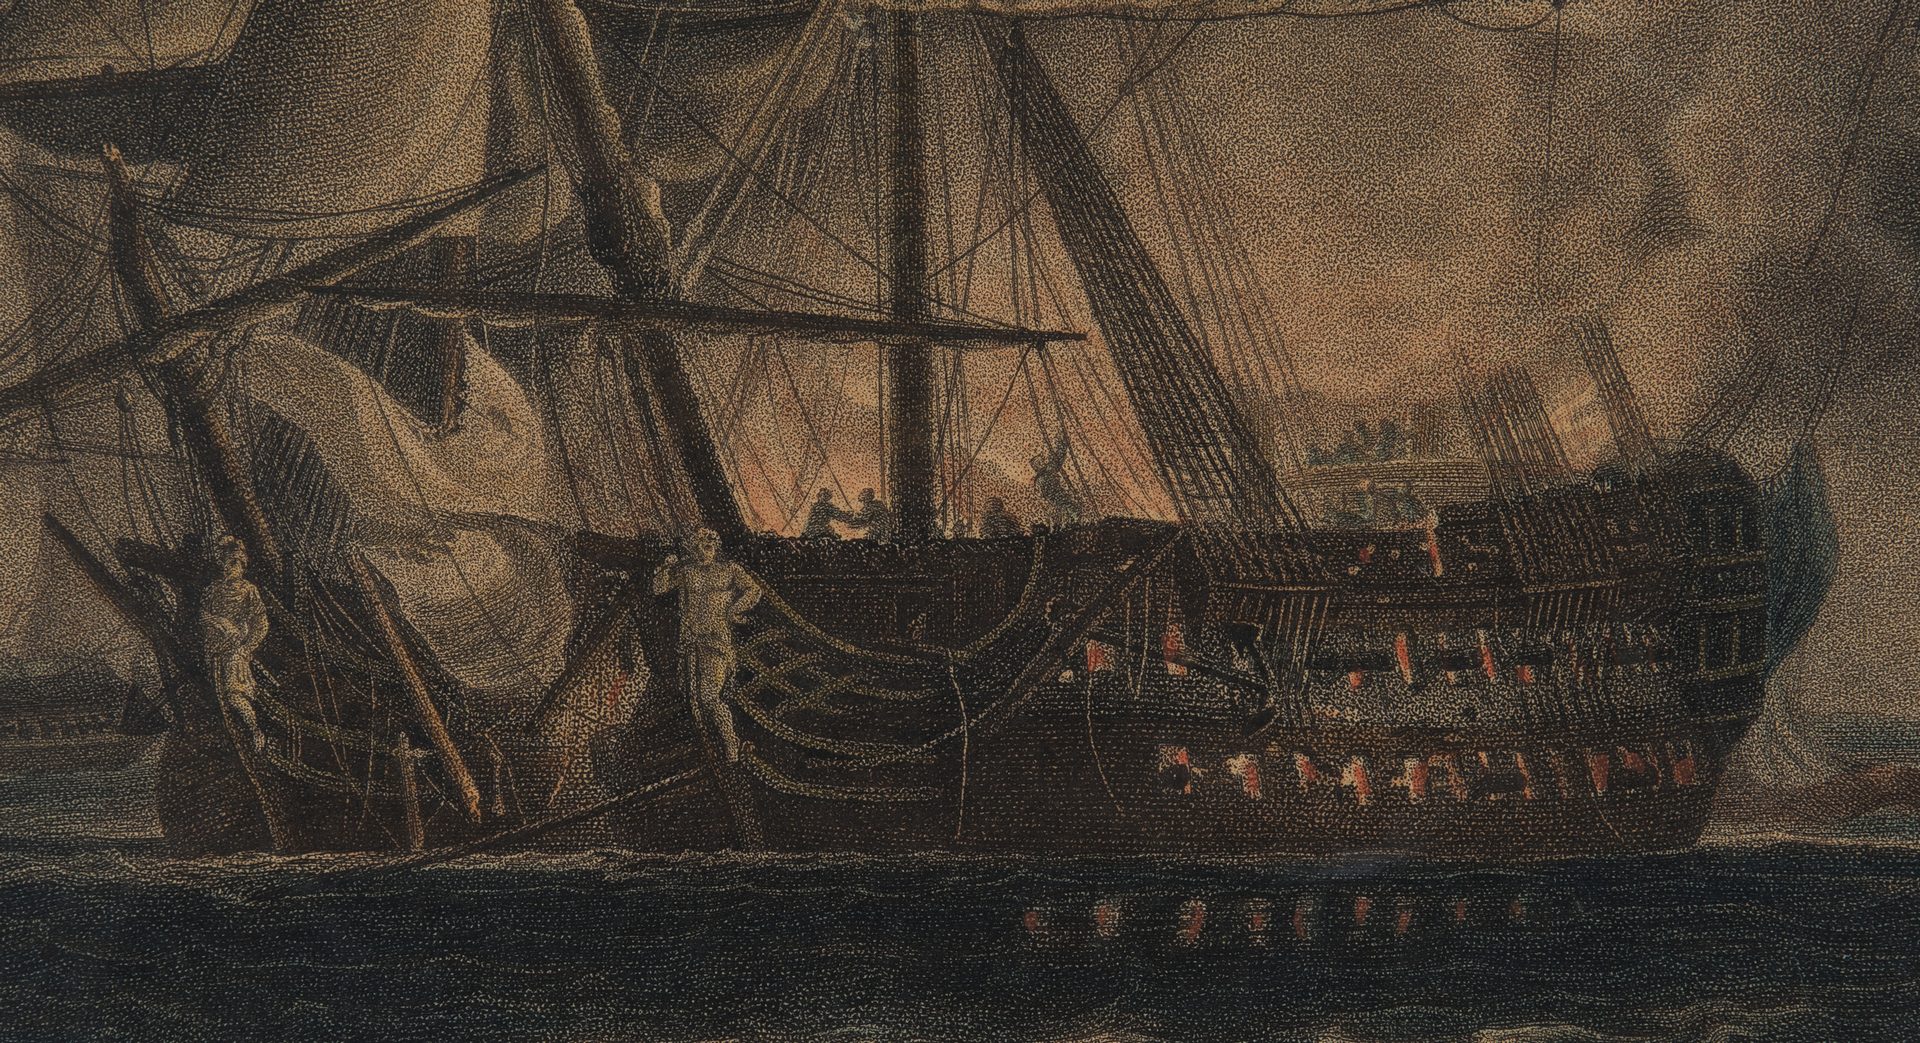 Lot 770: 2 Marine Engravings, Naval Battles